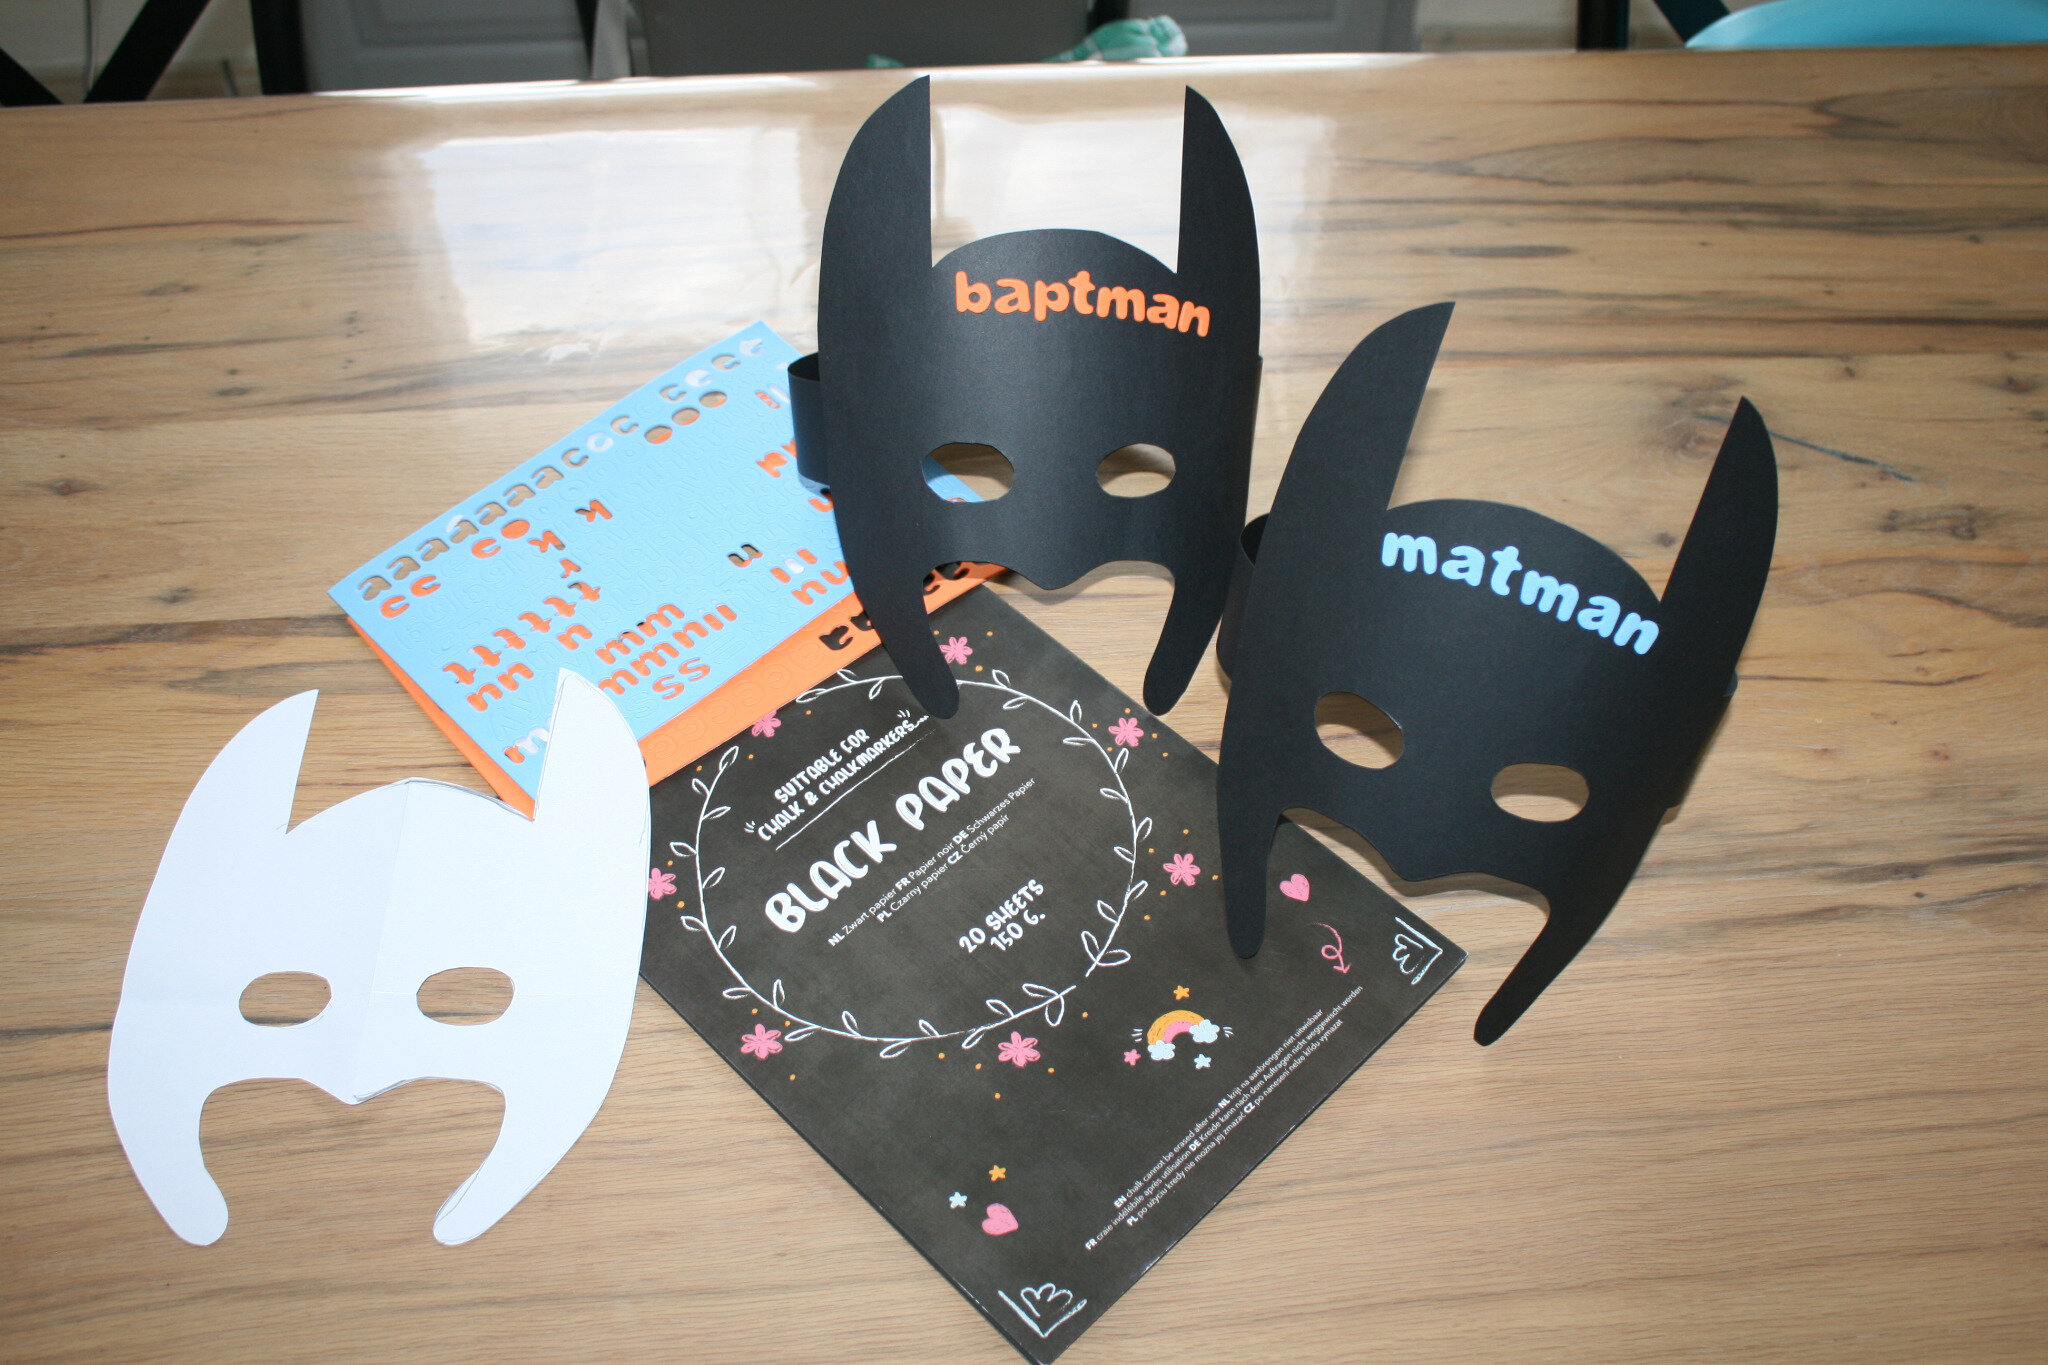 8 Masques Batman - Carton pour l'anniversaire de votre enfant